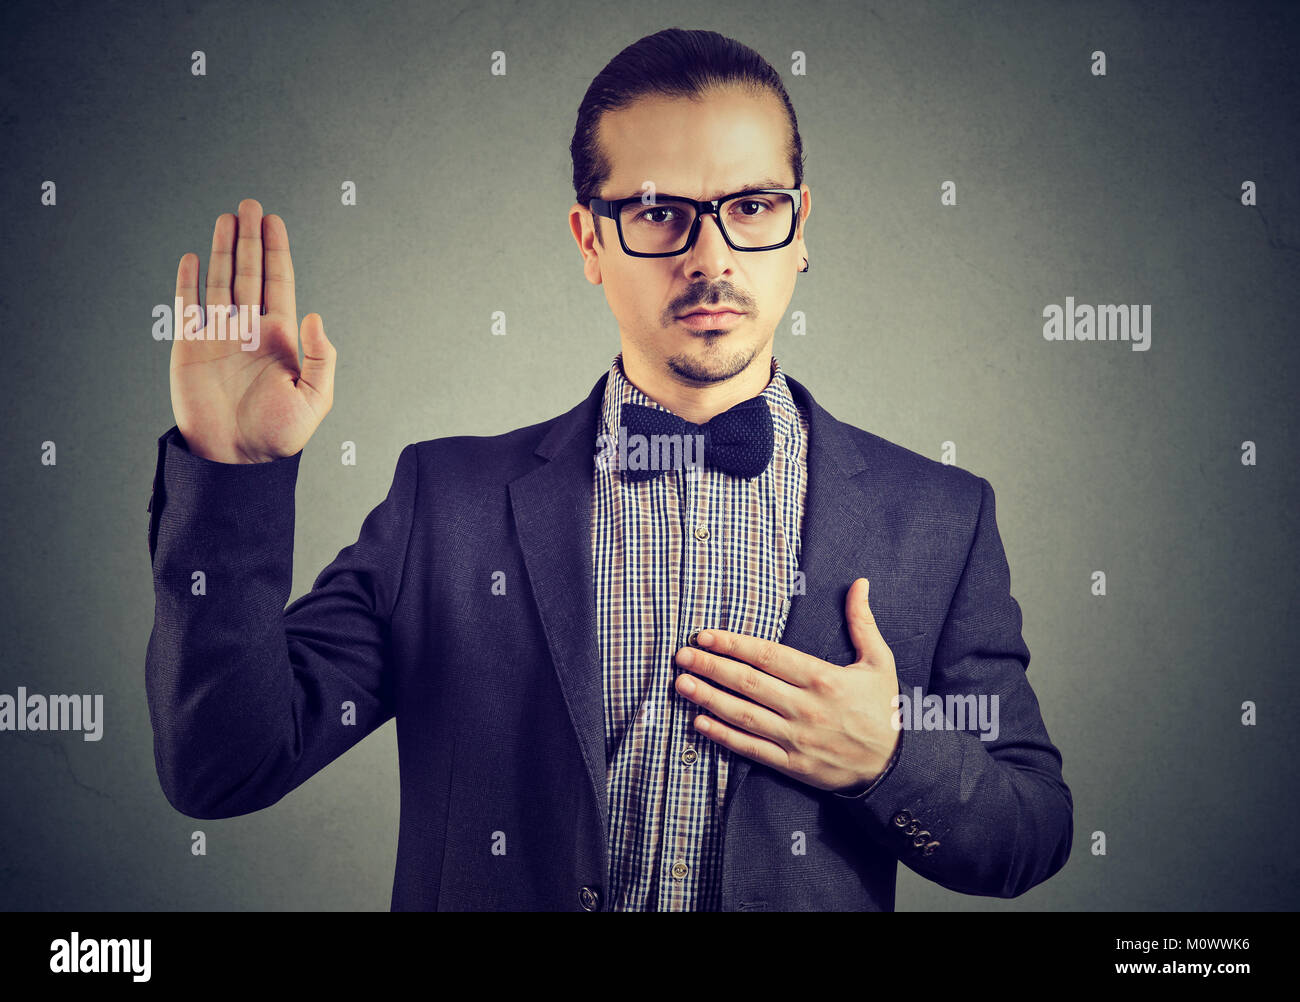 Junger Mann in formelle Kleidung und Brillen Vereidigung als vertrauenswürdig bei Kamera schaut. Stockfoto